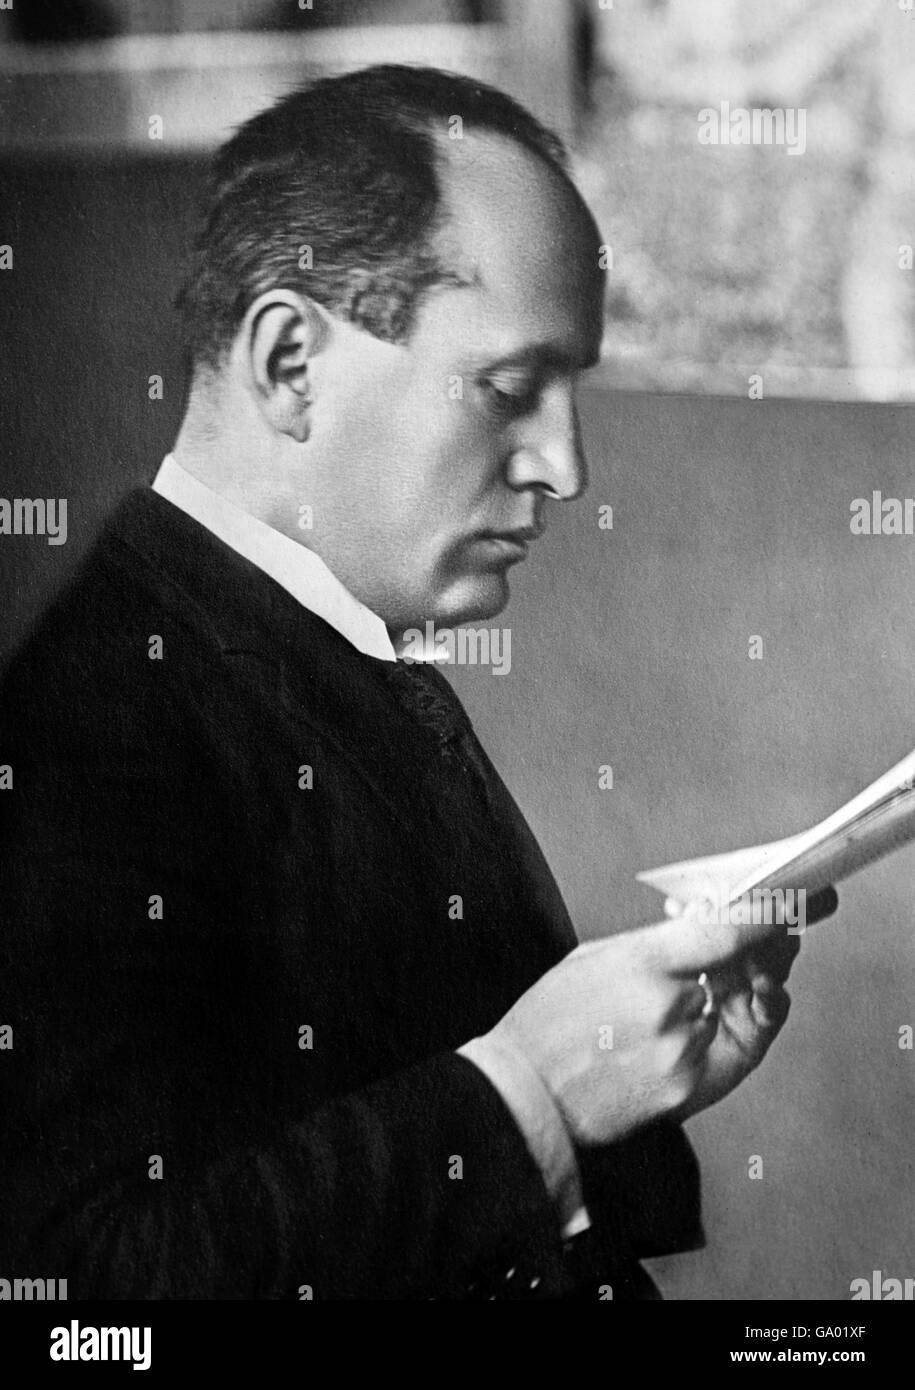 Mussolini. Portrait de Benito Amilcare Andrea Mussolini (1883-1945), le dictateur fasciste italien. Photo de Bain News Service, c.1922 Banque D'Images